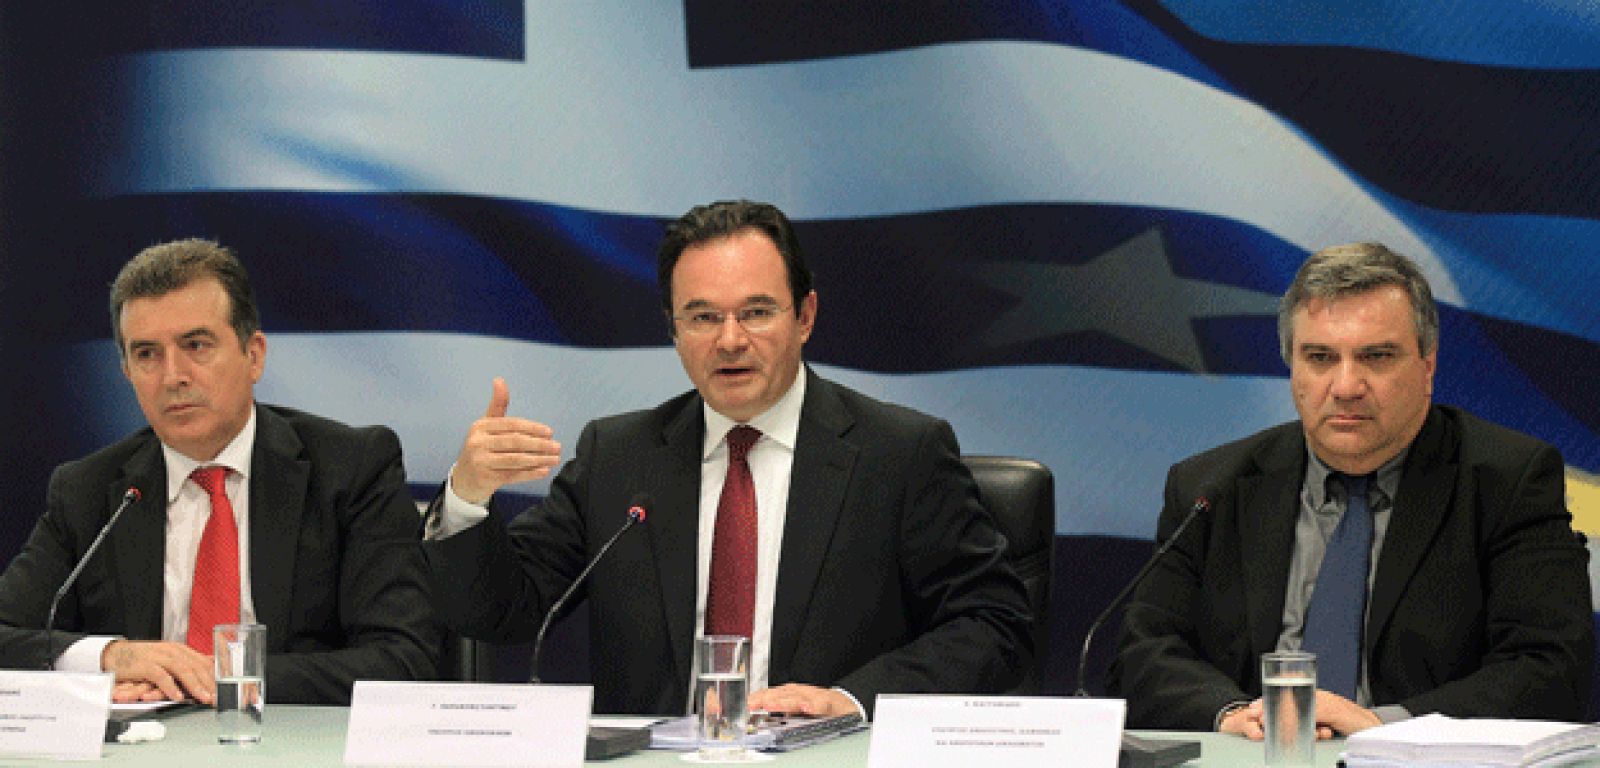 De izquierda a derecha, el ministro de Desarrollo regional, Michalis Chrysochoidis, el ministro griego de Finanzas, George Papaconstantinou y el ministro de Justicia, Haris Kastanidis